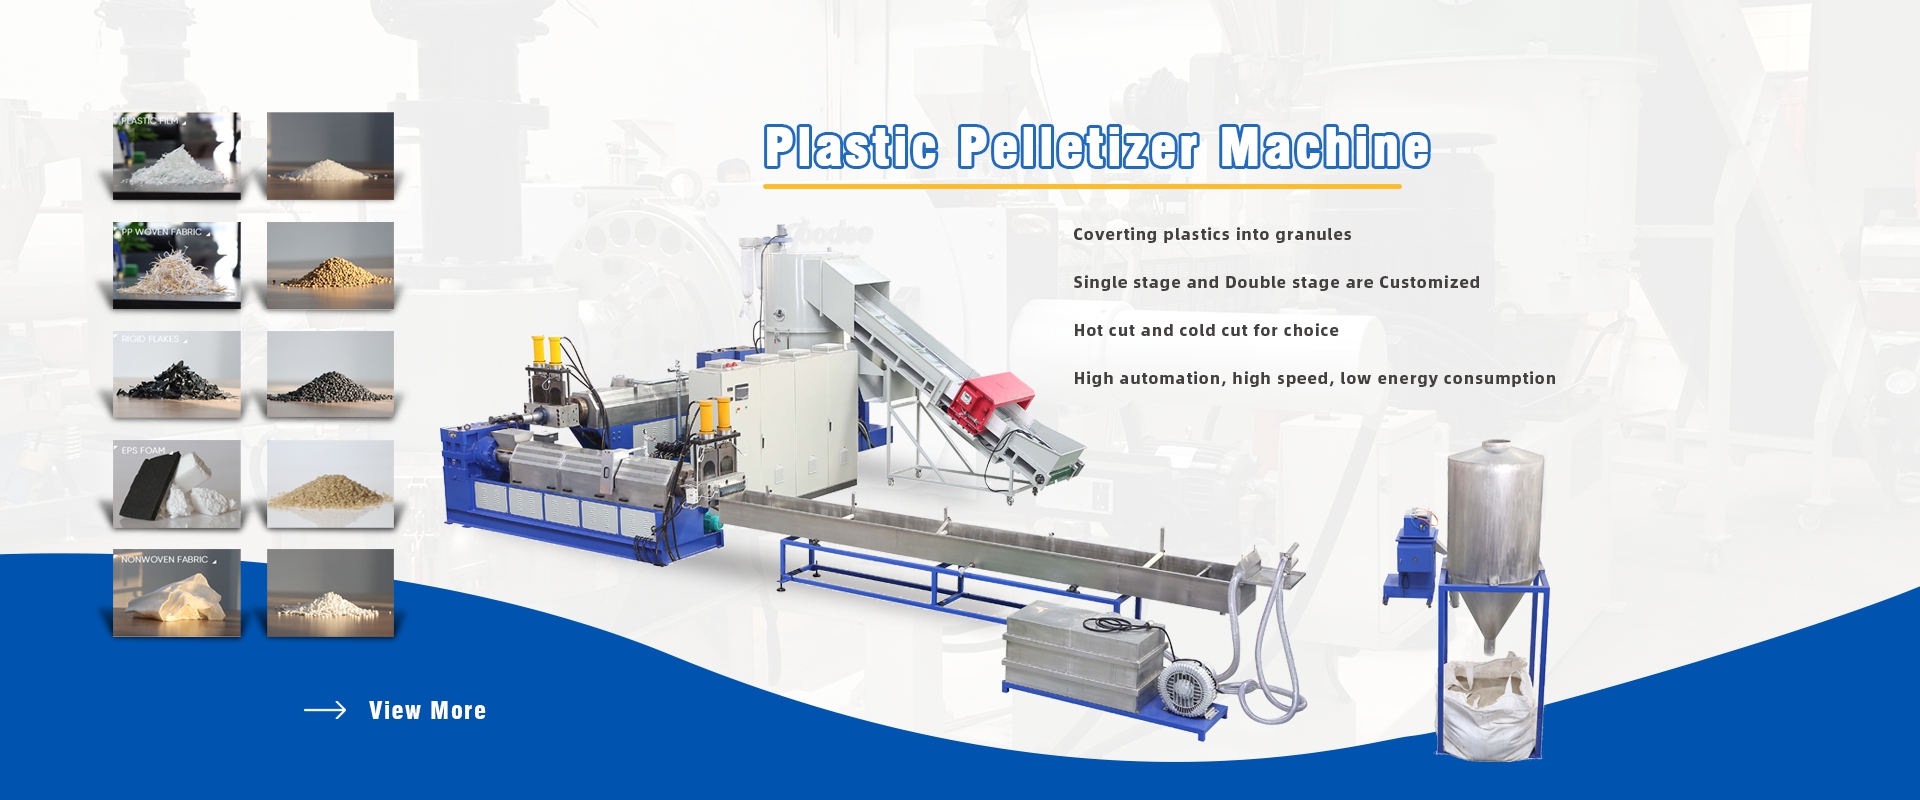 Plastic Pelletizer Machine